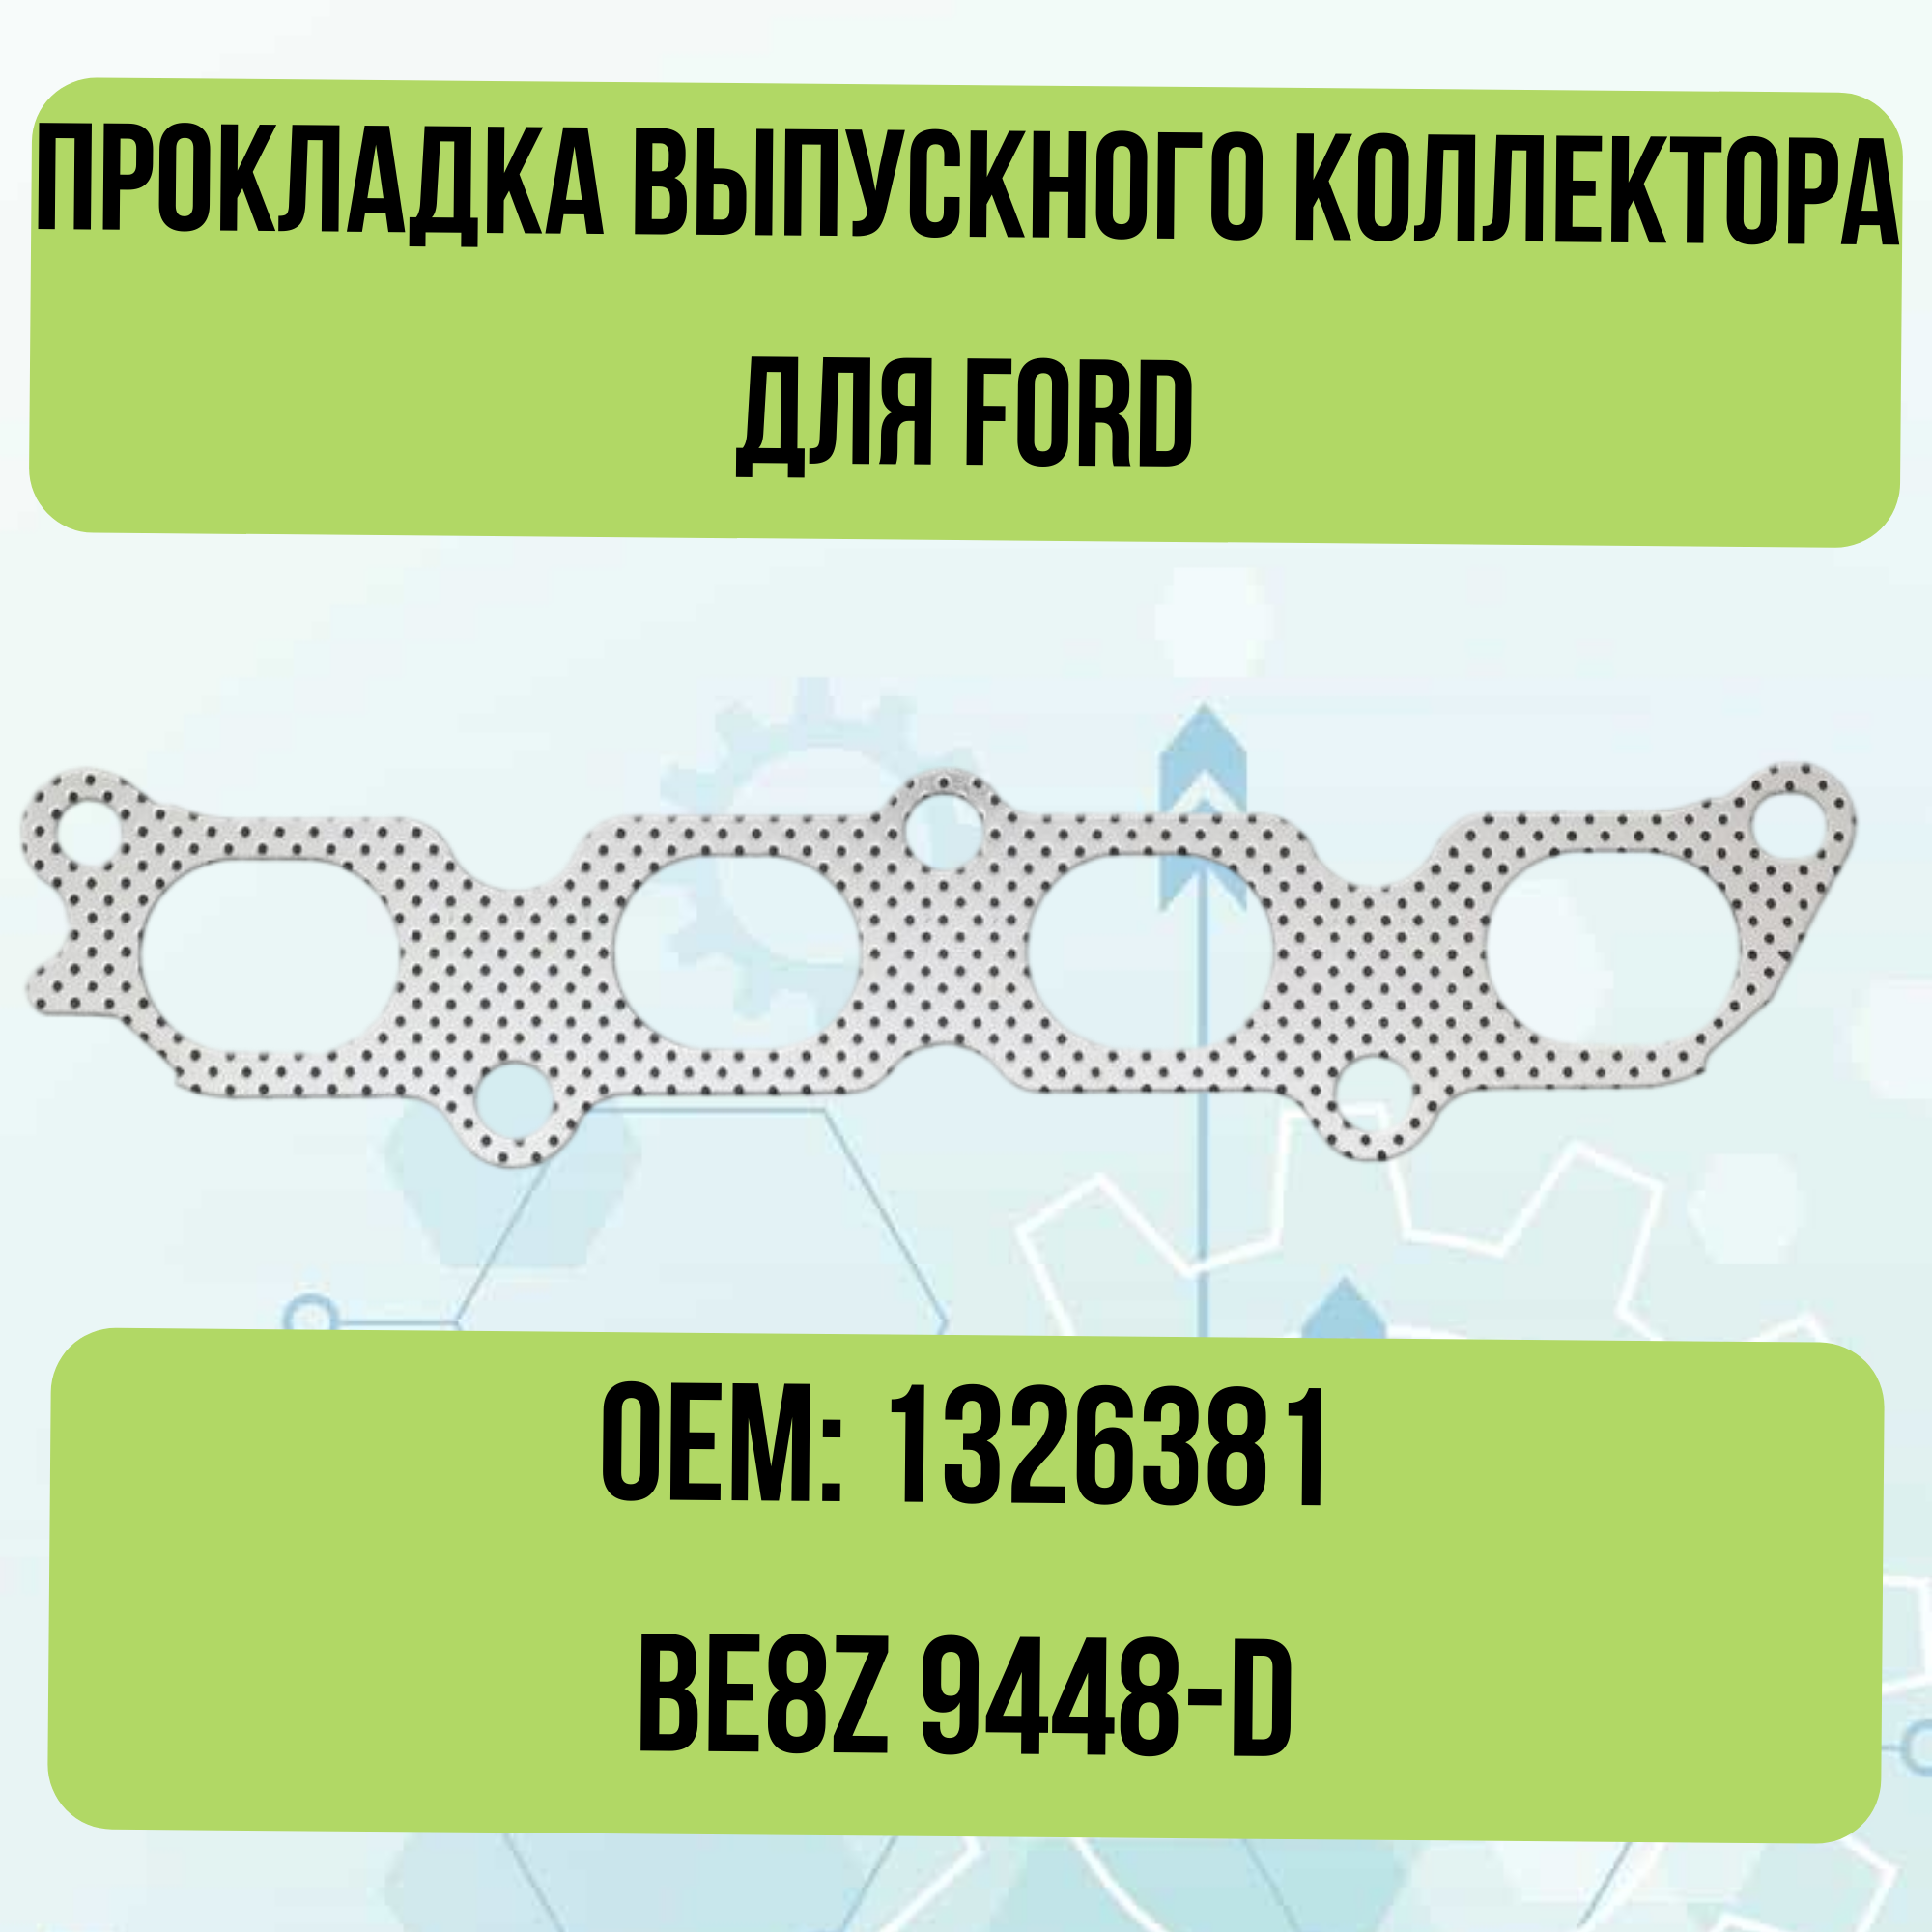 Прокладка выпускного коллектора для Ford 1326381 BE8Z 9448-D